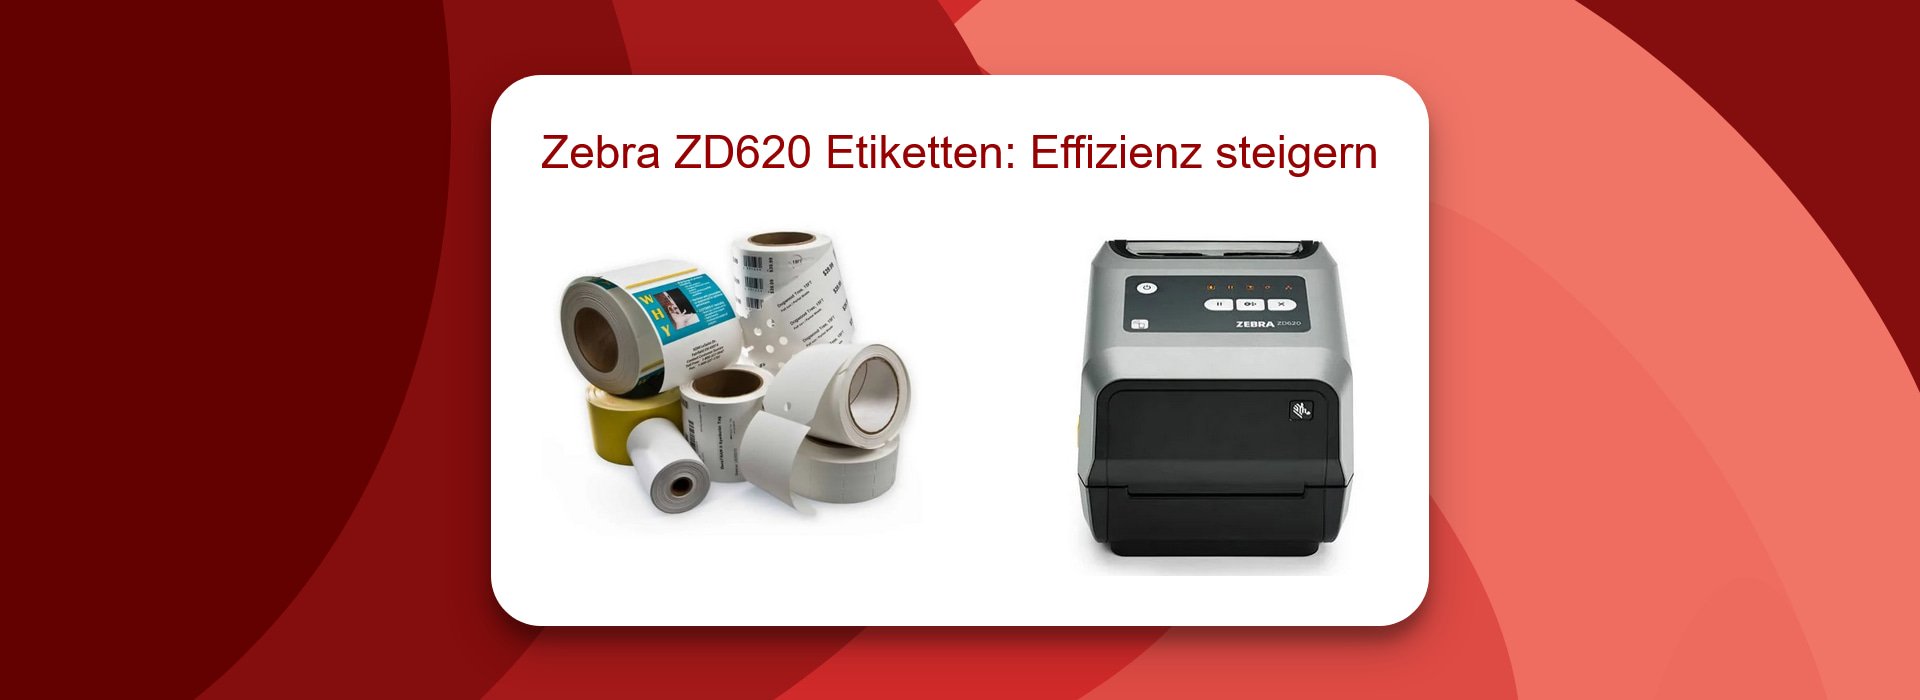 Zebra ZD620 Kalibrieren für Etikettendruck